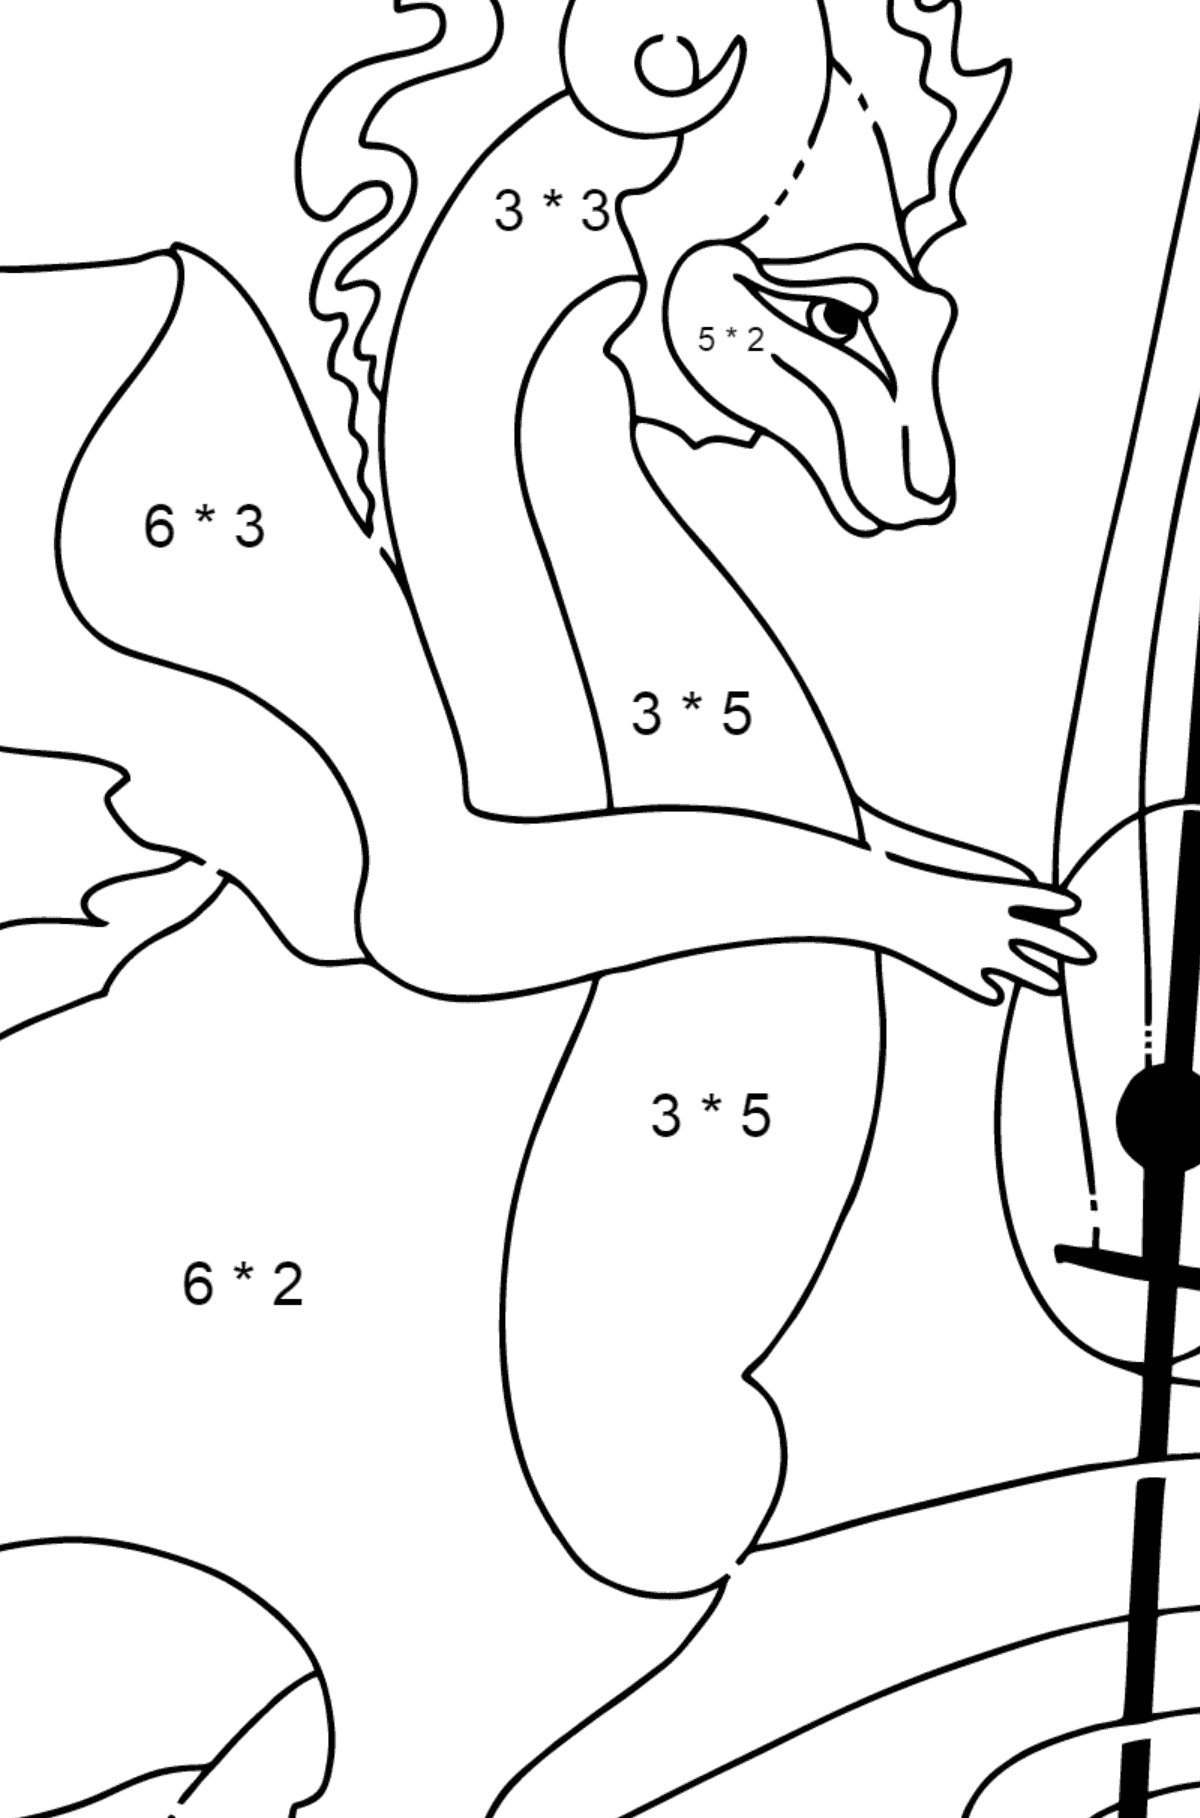 Boyama sayfası müzikal ejderha (kolay) - Matematik Boyama - Çarpma çocuklar için